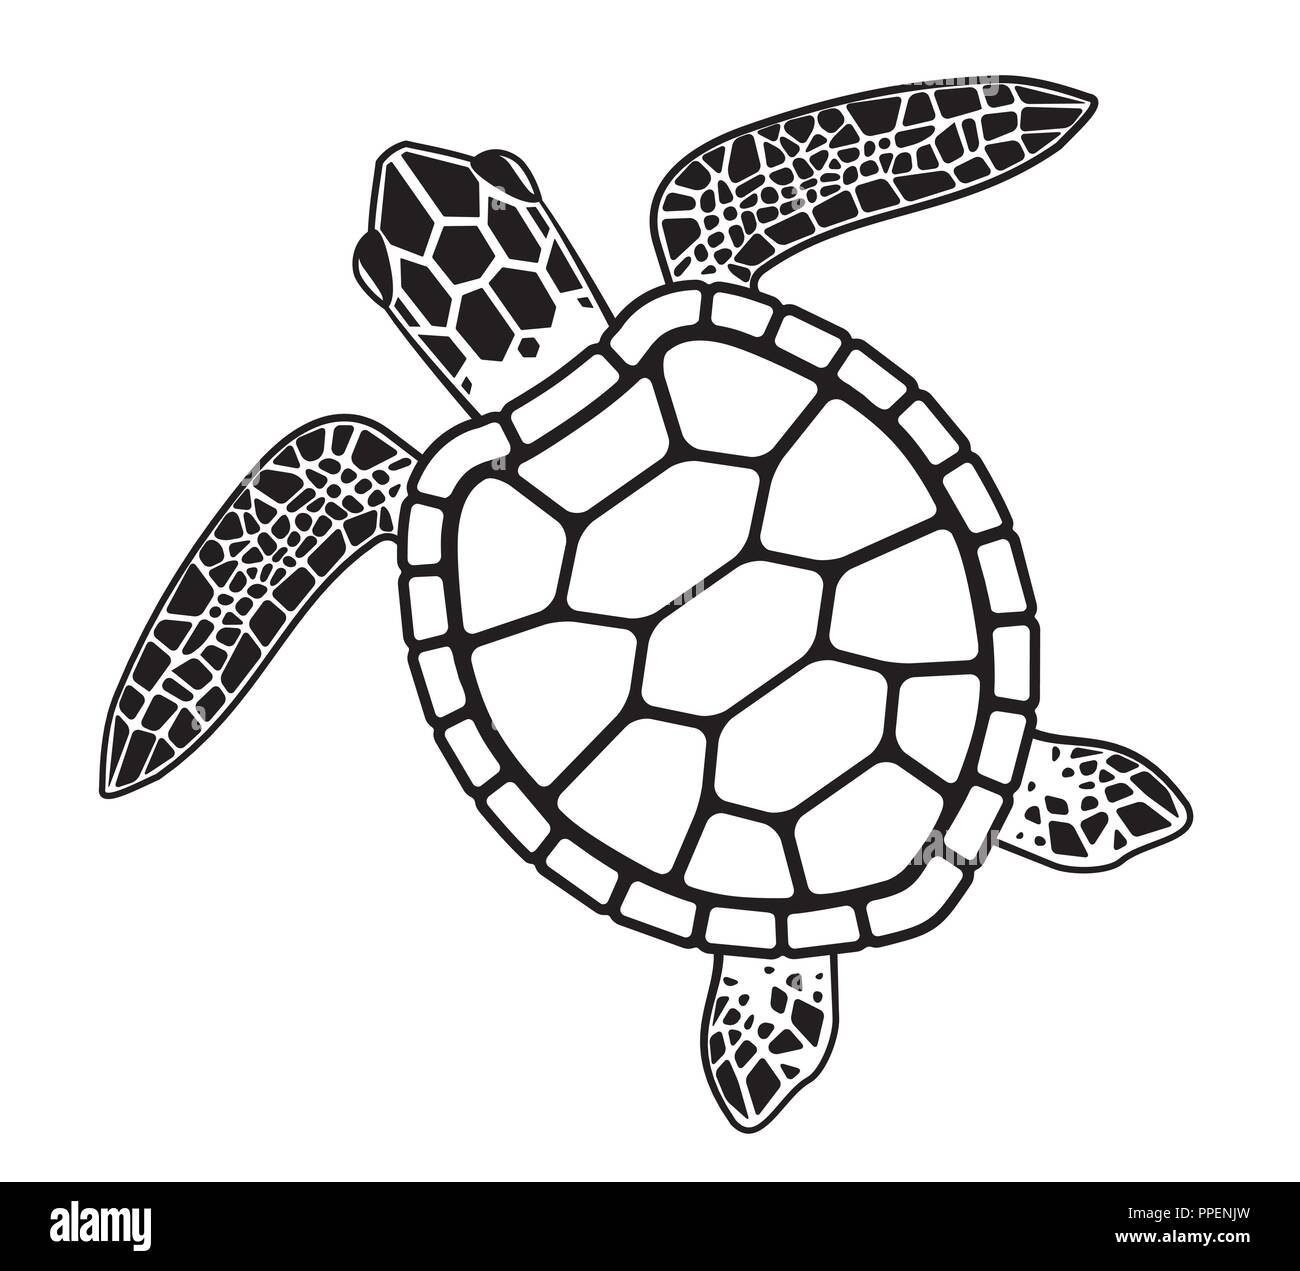 Illustration graphique de vecteur d'une tortue de mer de la faune Illustration de Vecteur